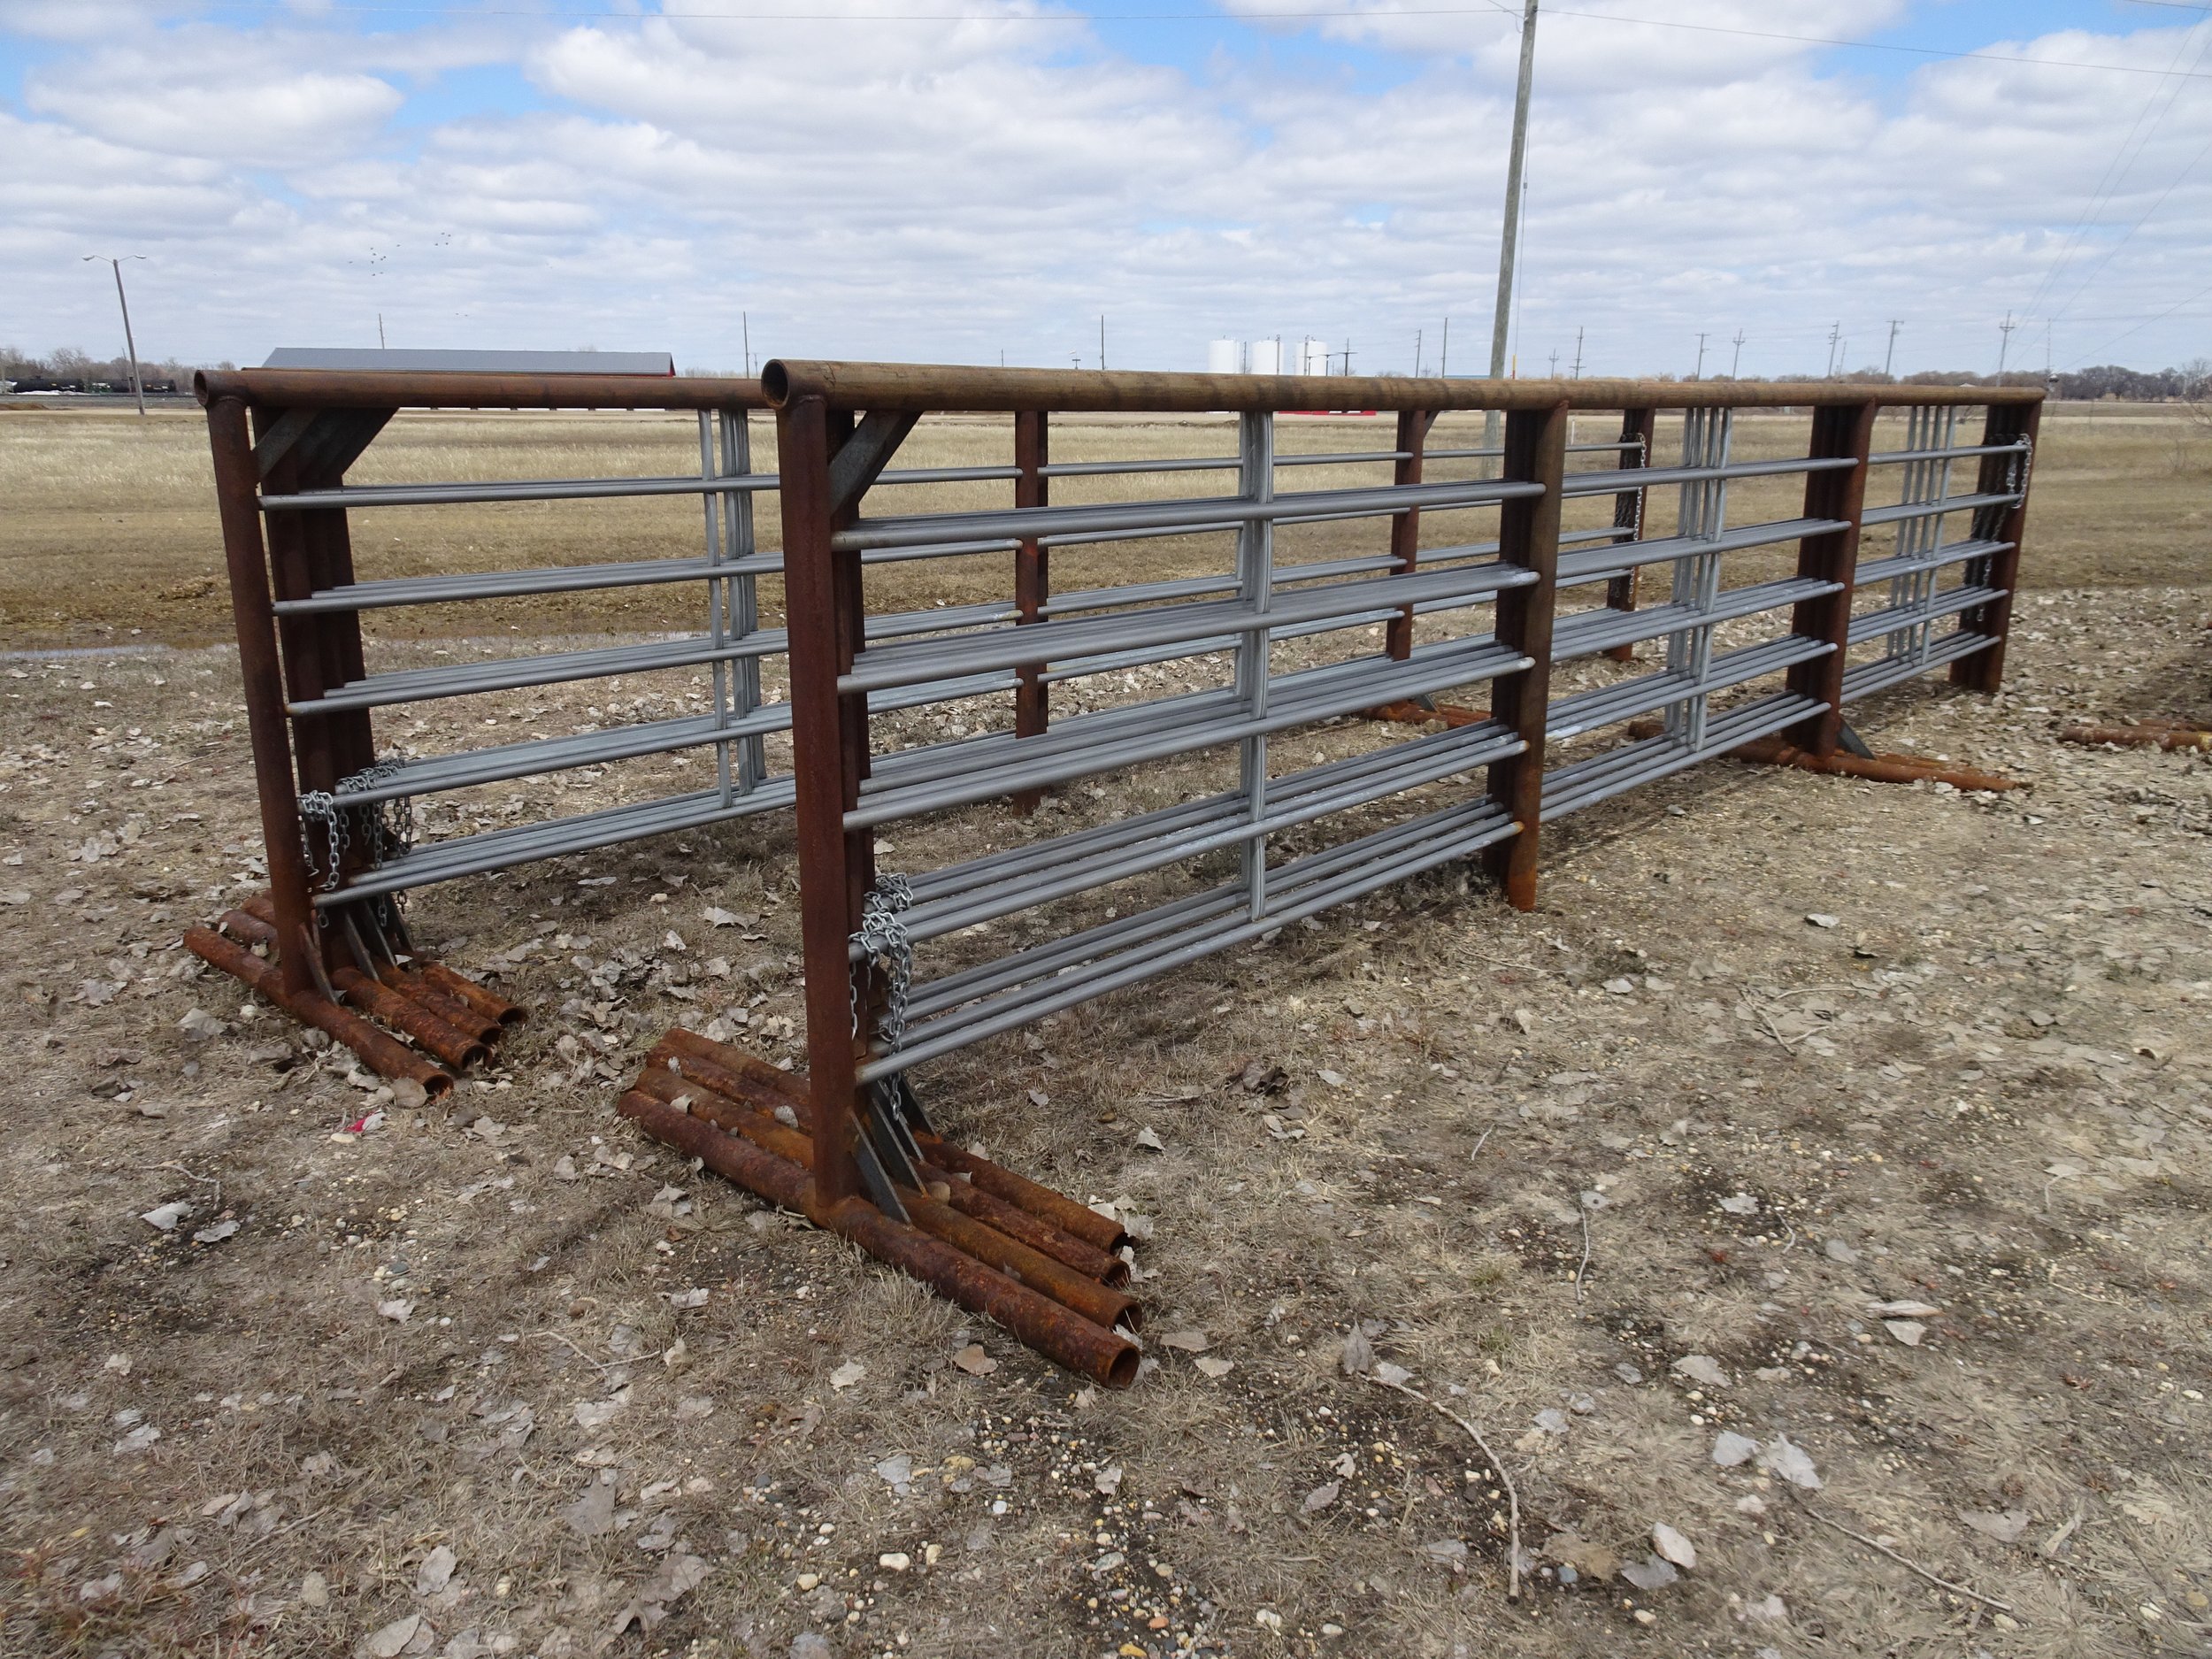 New/Unused livestock panels